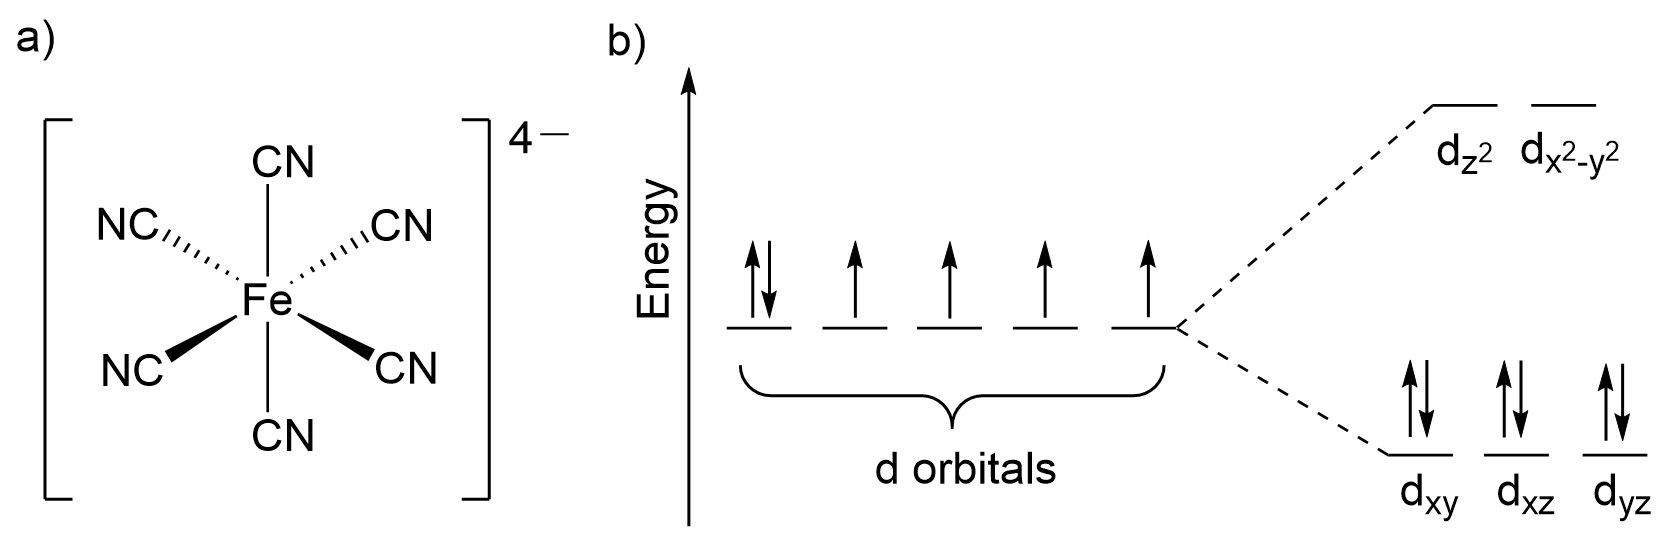 a) Октаэдрический комплекс железа(II), b) энергетическая диаграмма расщепления d-орбиталей.